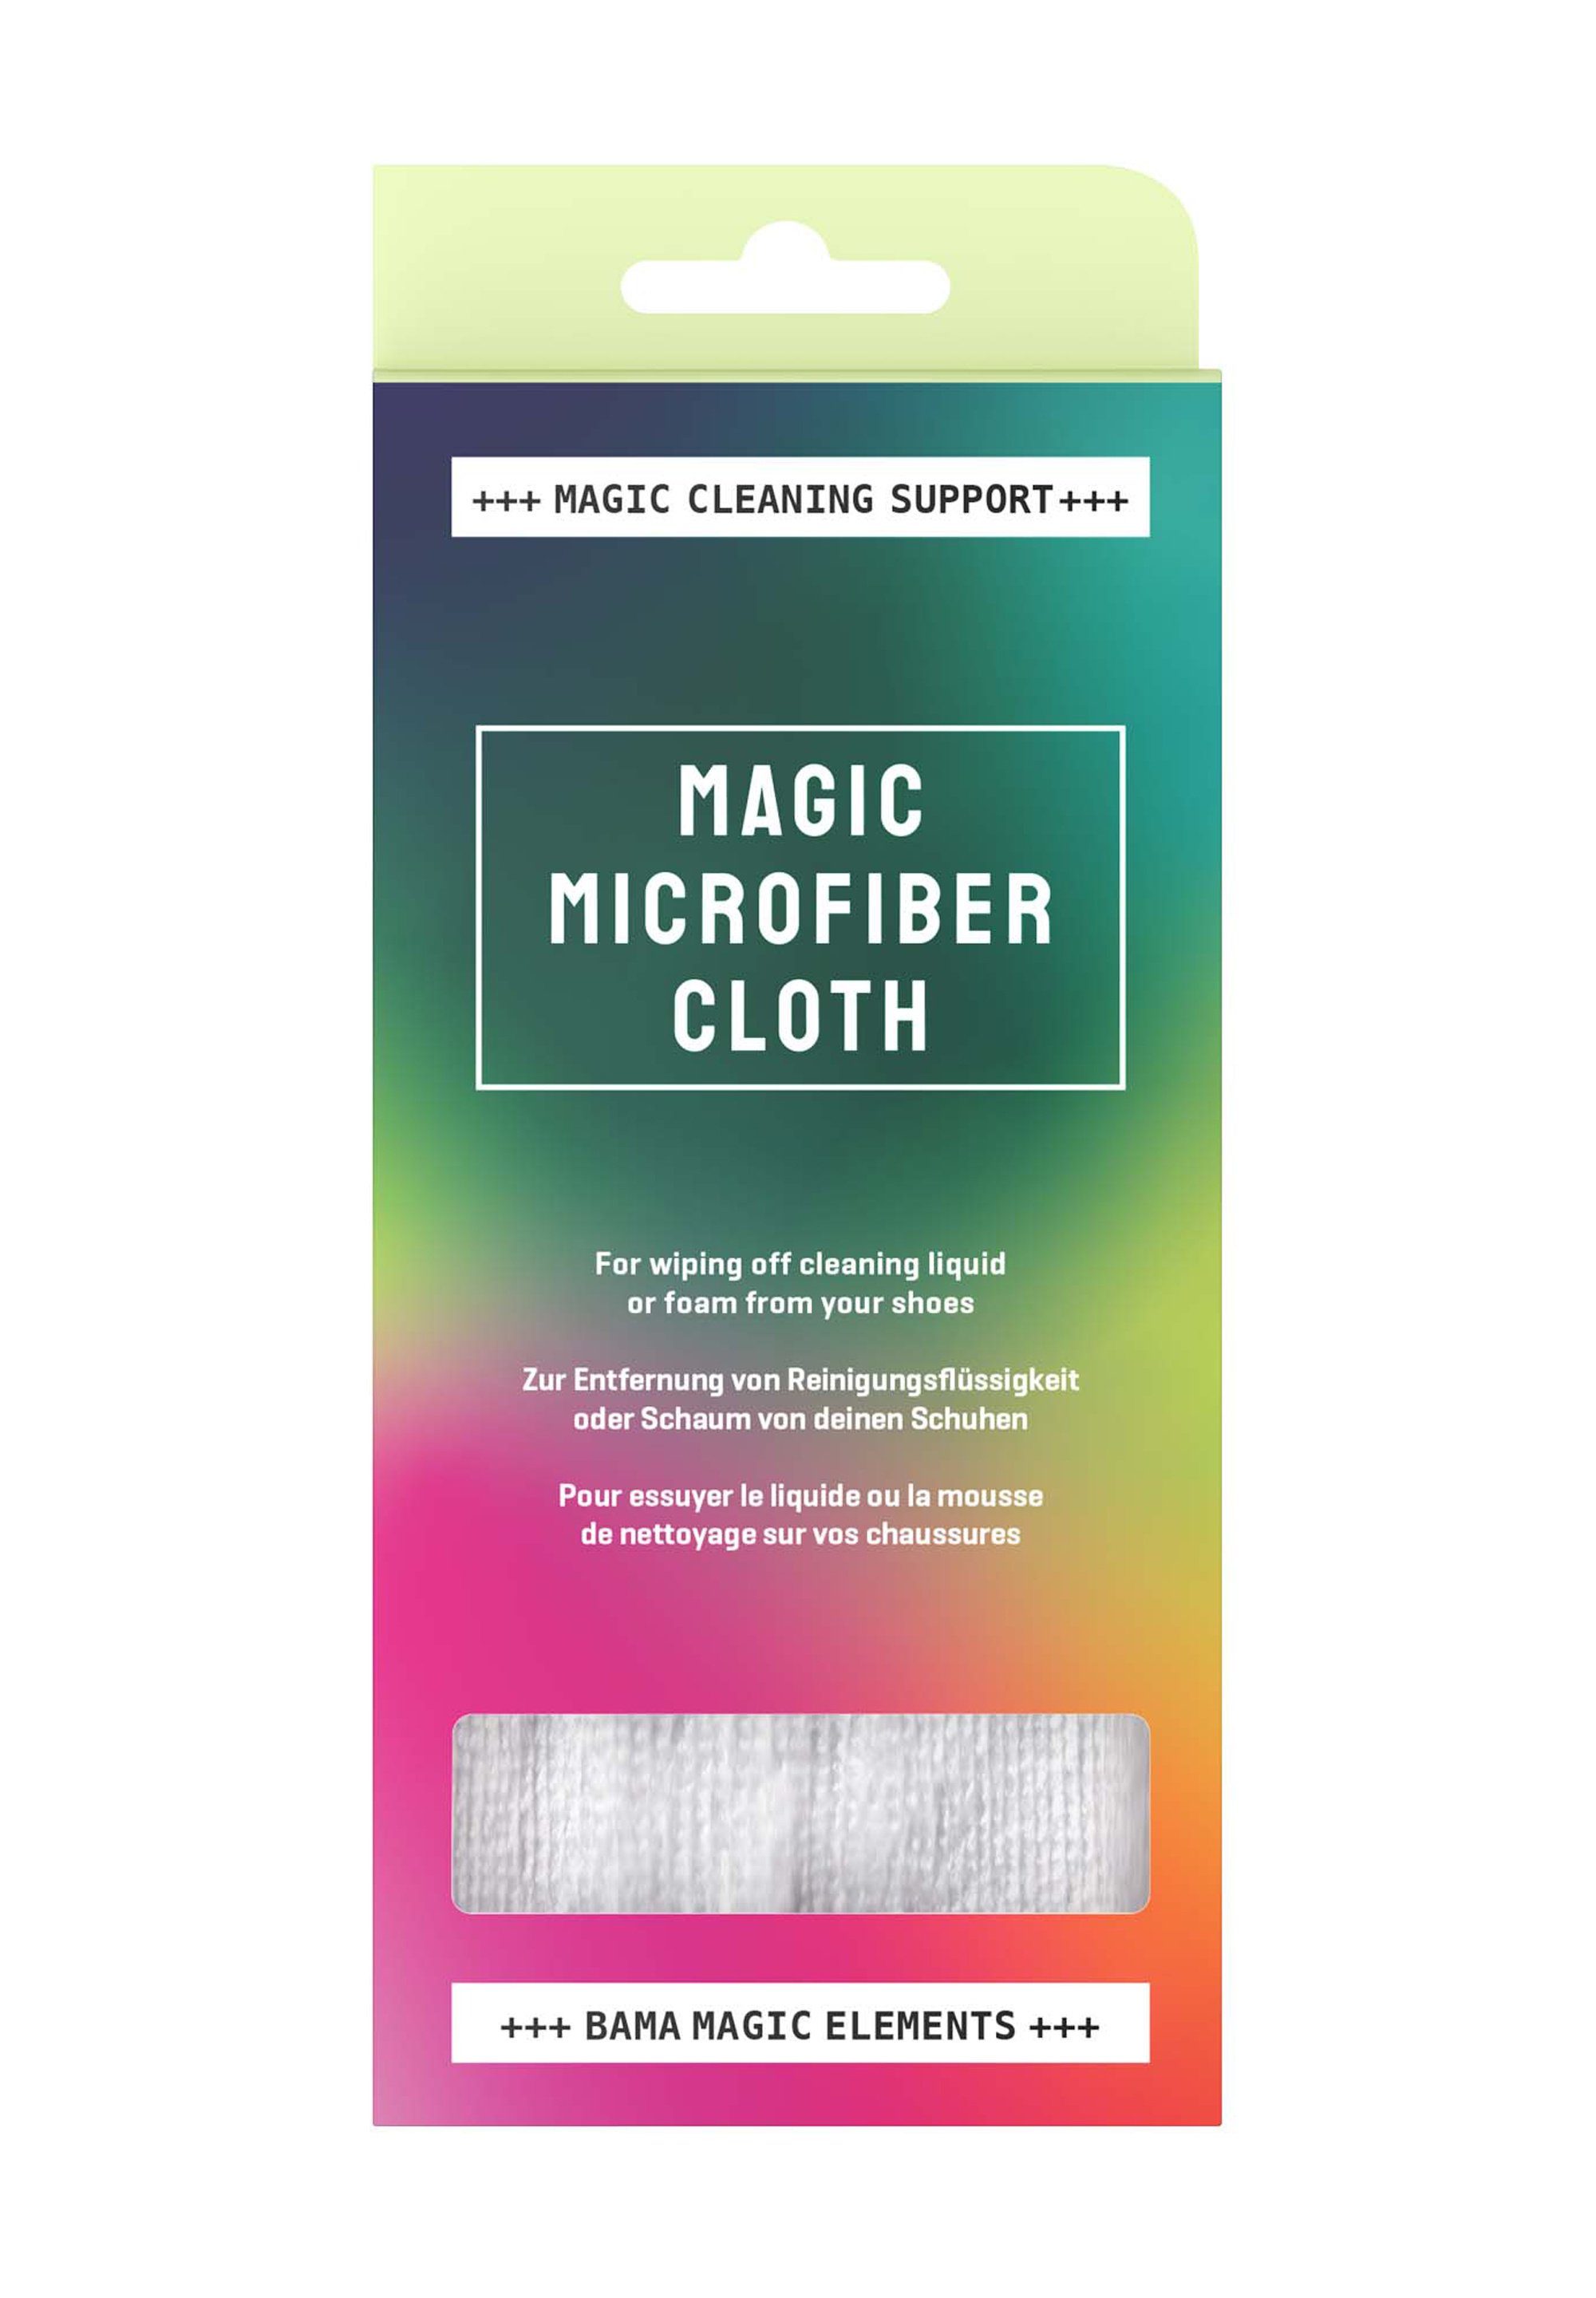 BAMA Group Bama Magic Midsole 1x Tuch Schuhreiniger Set (2x Cleaner Magic Midsole + Startet Cleaner gratis)